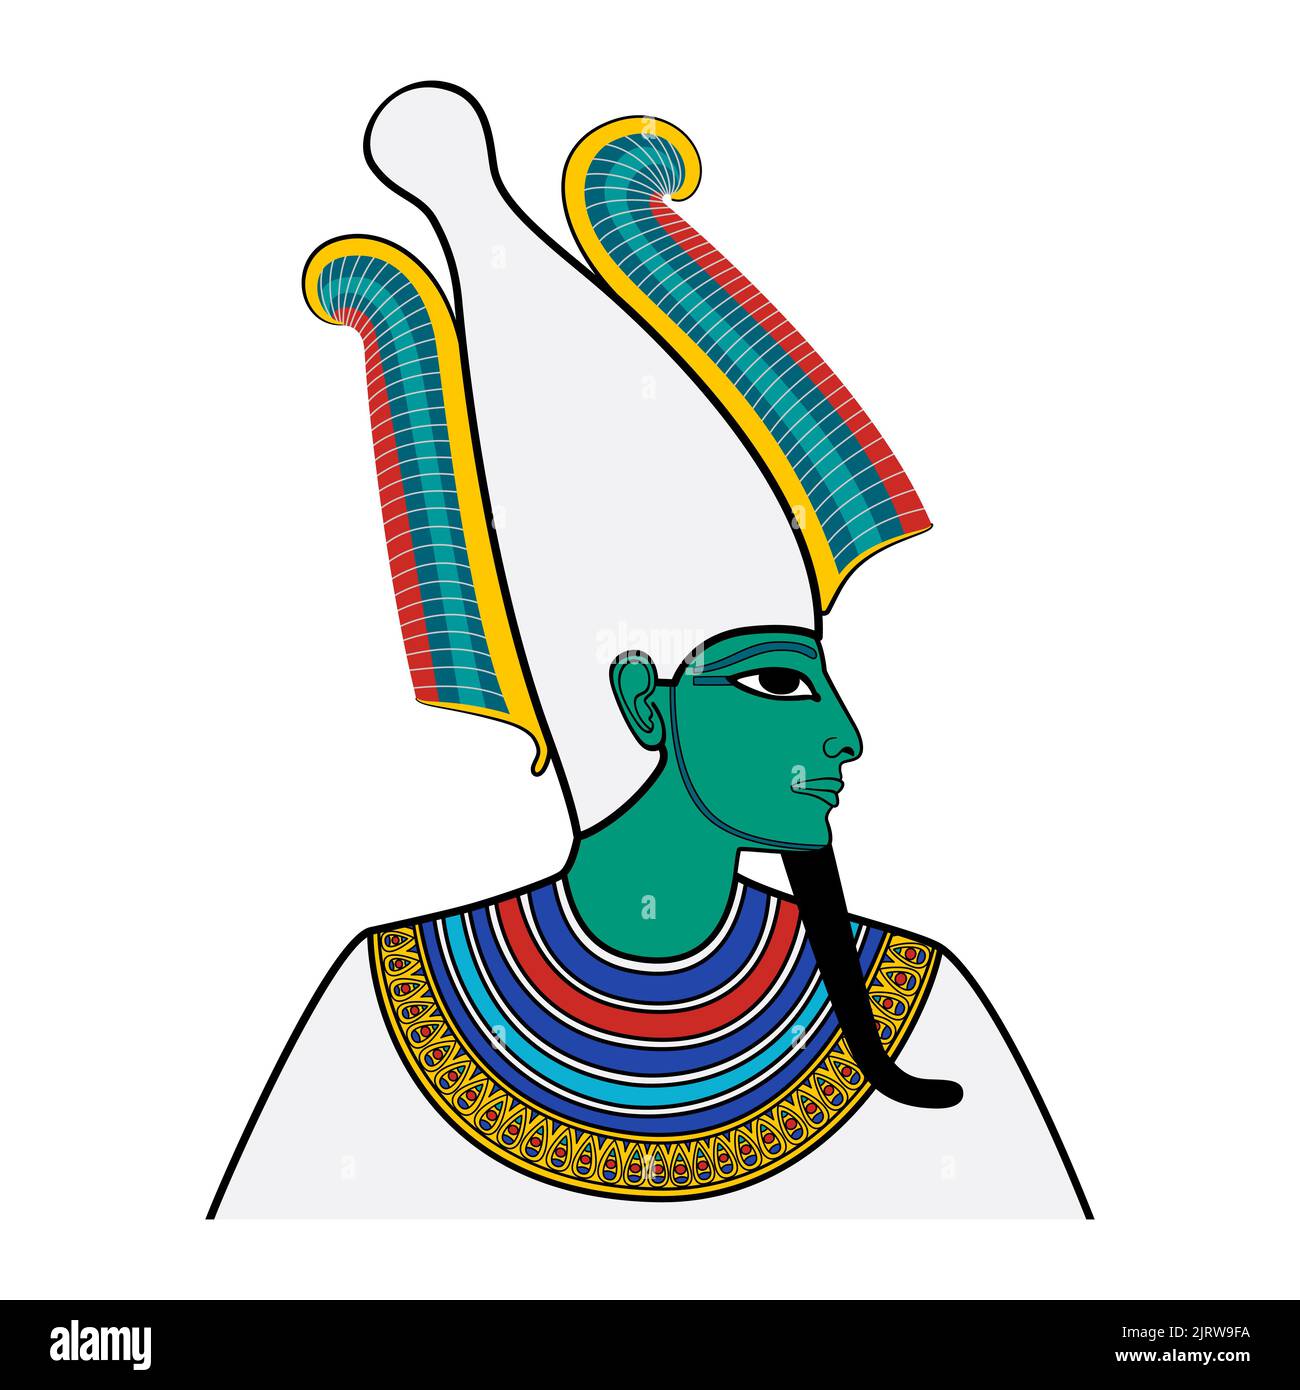 Osiris, portrait du dieu de l'après-vie, mort et résurrection dans l'Égypte ancienne. Elle est représentée avec une peau turquoise verdâtre, une barbe pharaonique et une couronne d'atef. Banque D'Images